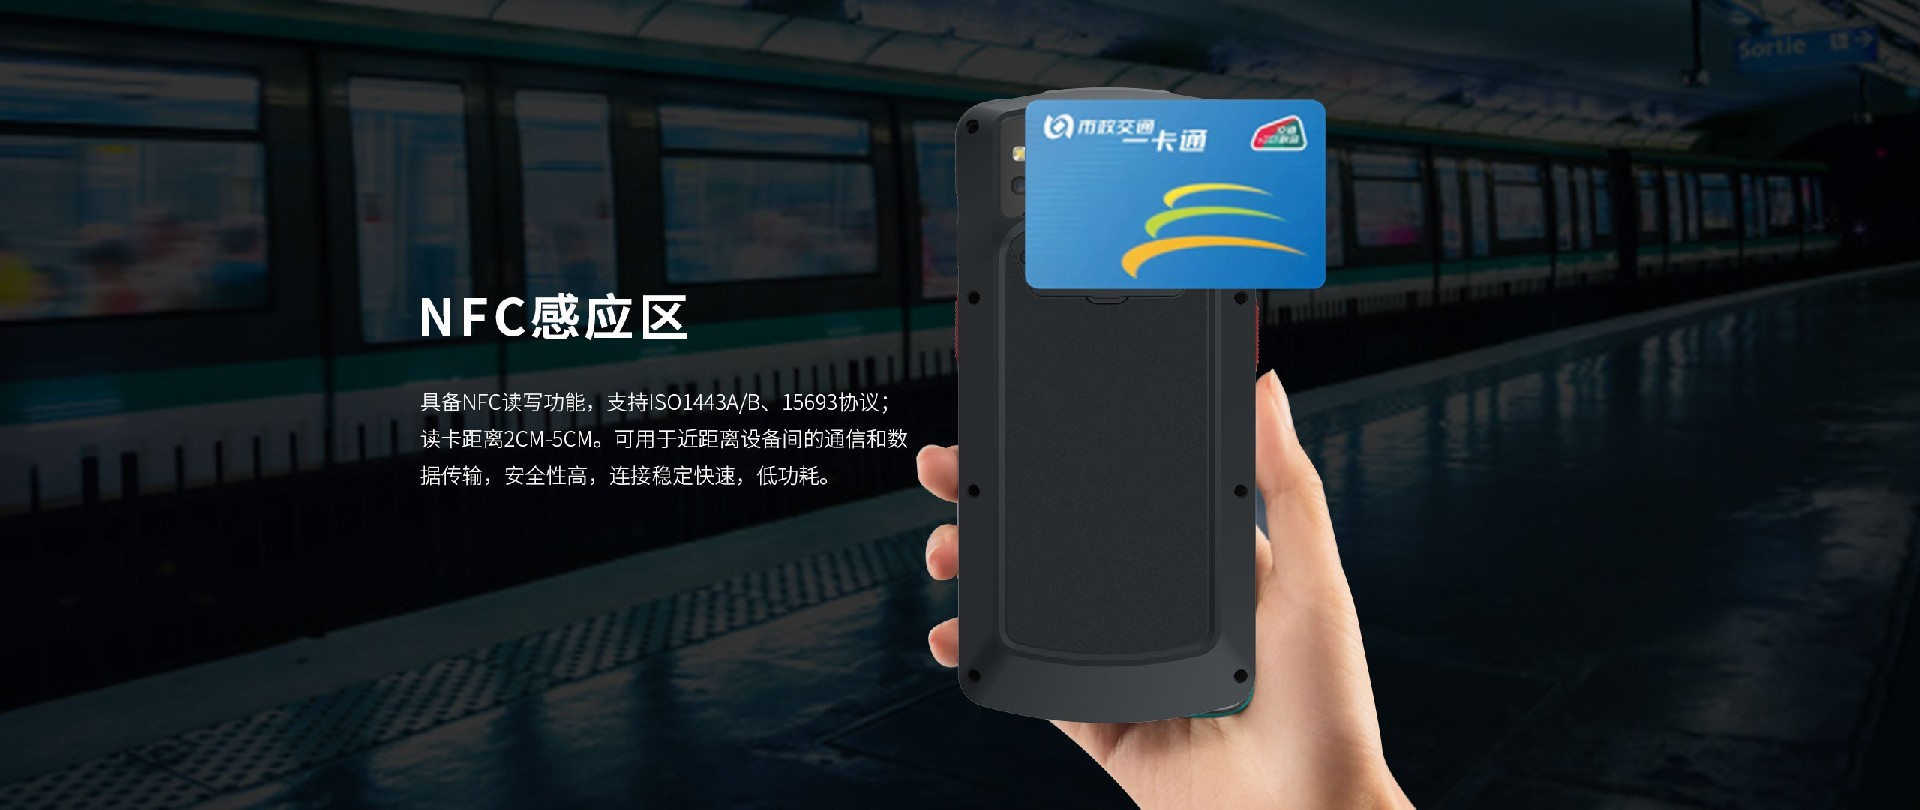 指纹识别手持机蓝畅S80手持终端身份证识别工业级PDA高频NFC模块